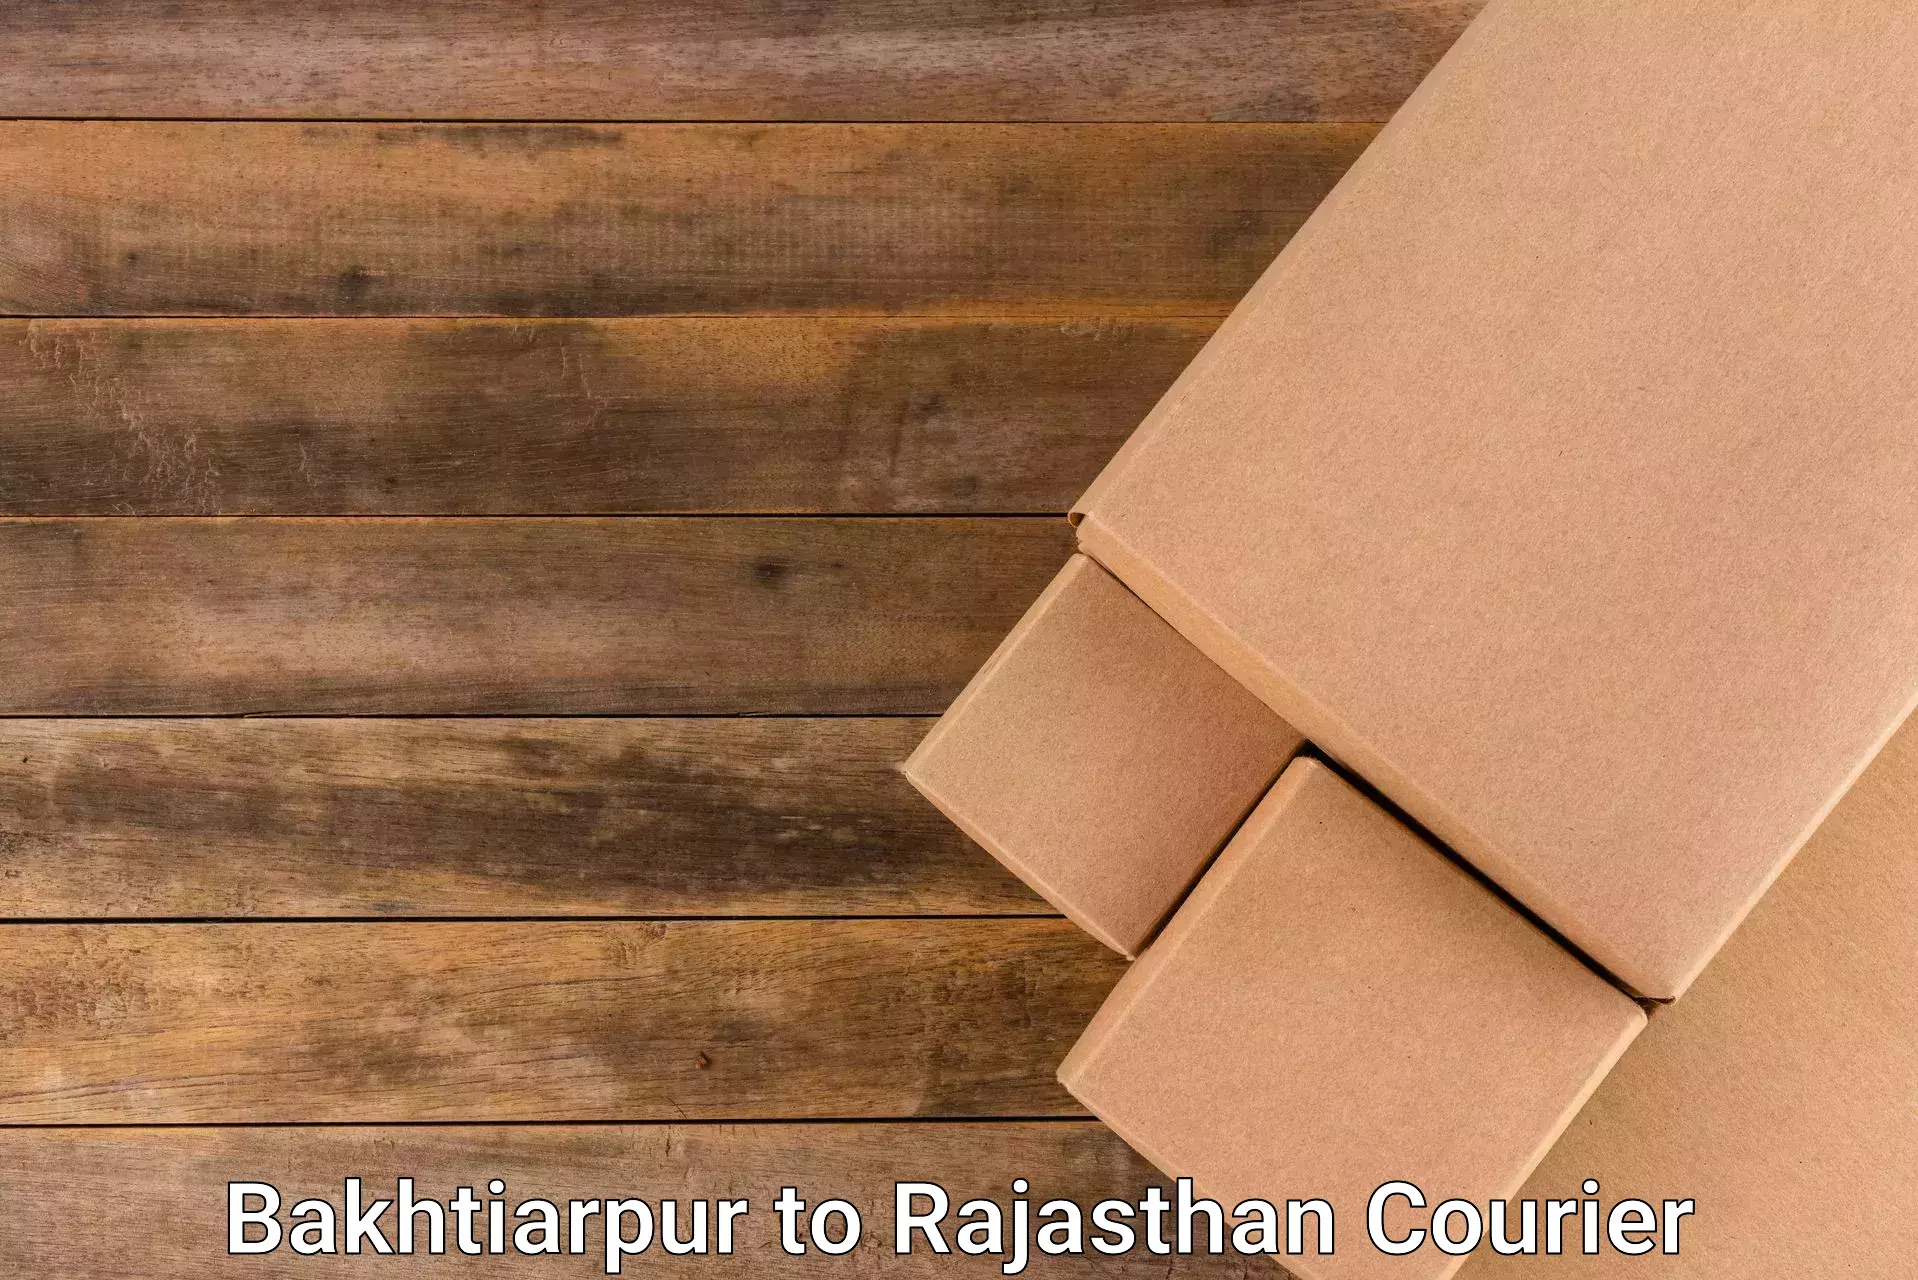 Seamless shipping service Bakhtiarpur to Pratapgarh Rajasthan